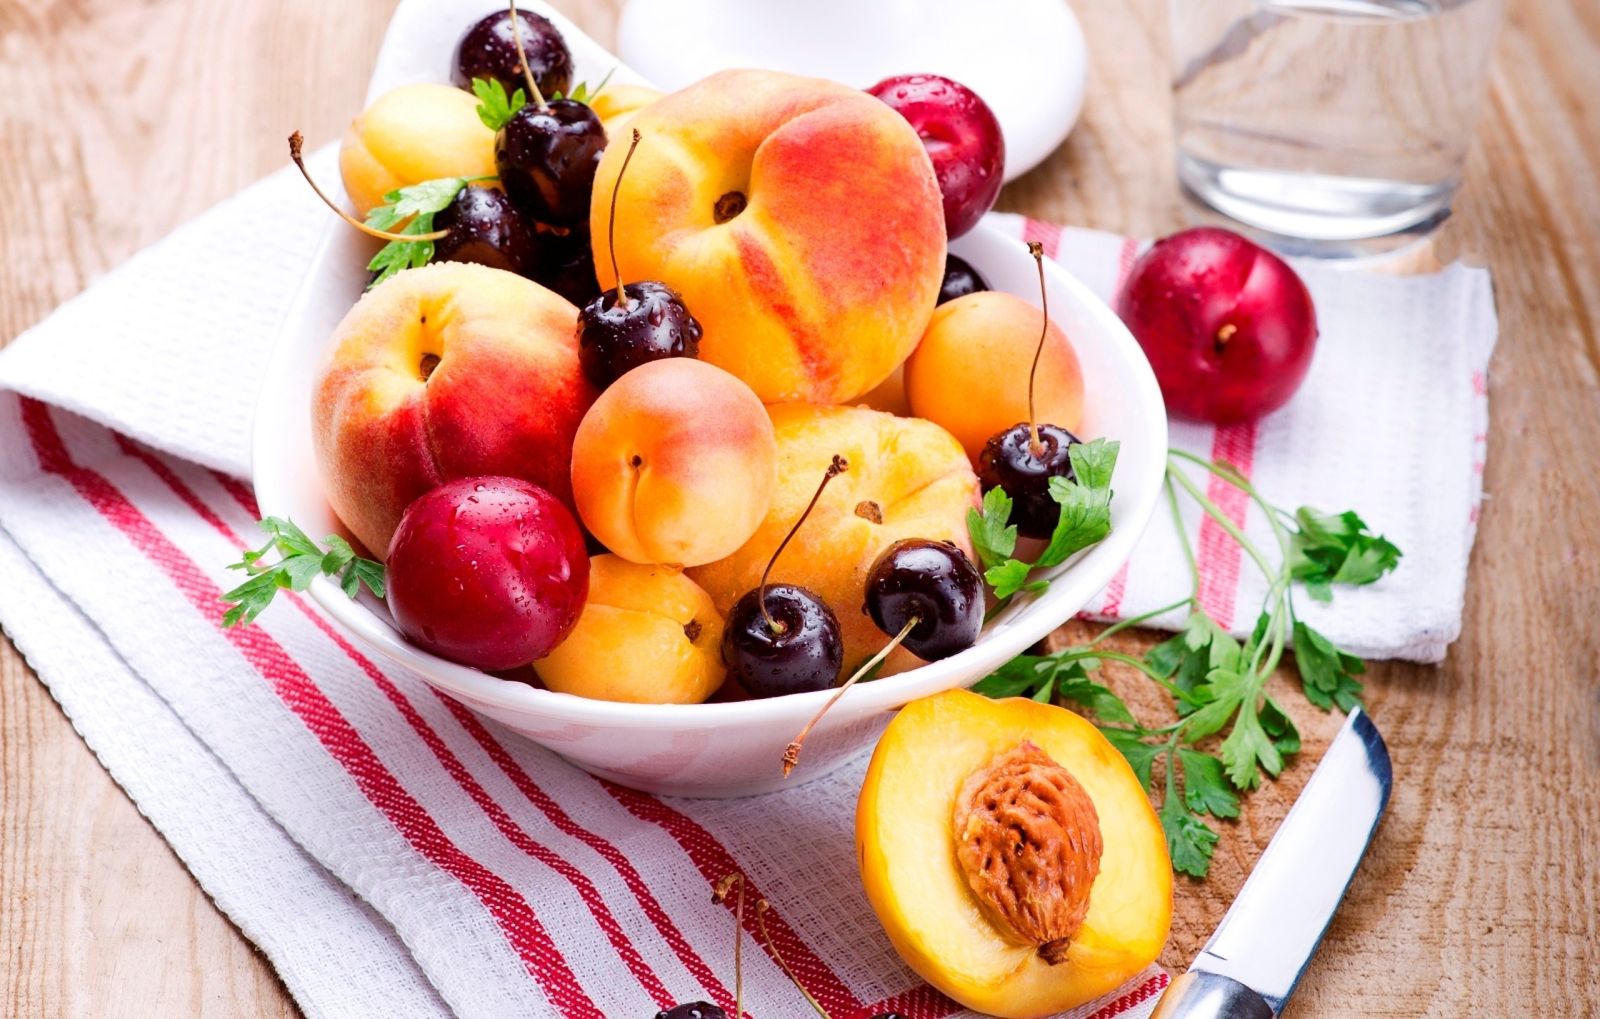 Hoa quả, trái cây có chứa ít calo, cung cấp chất xơ đáng kể